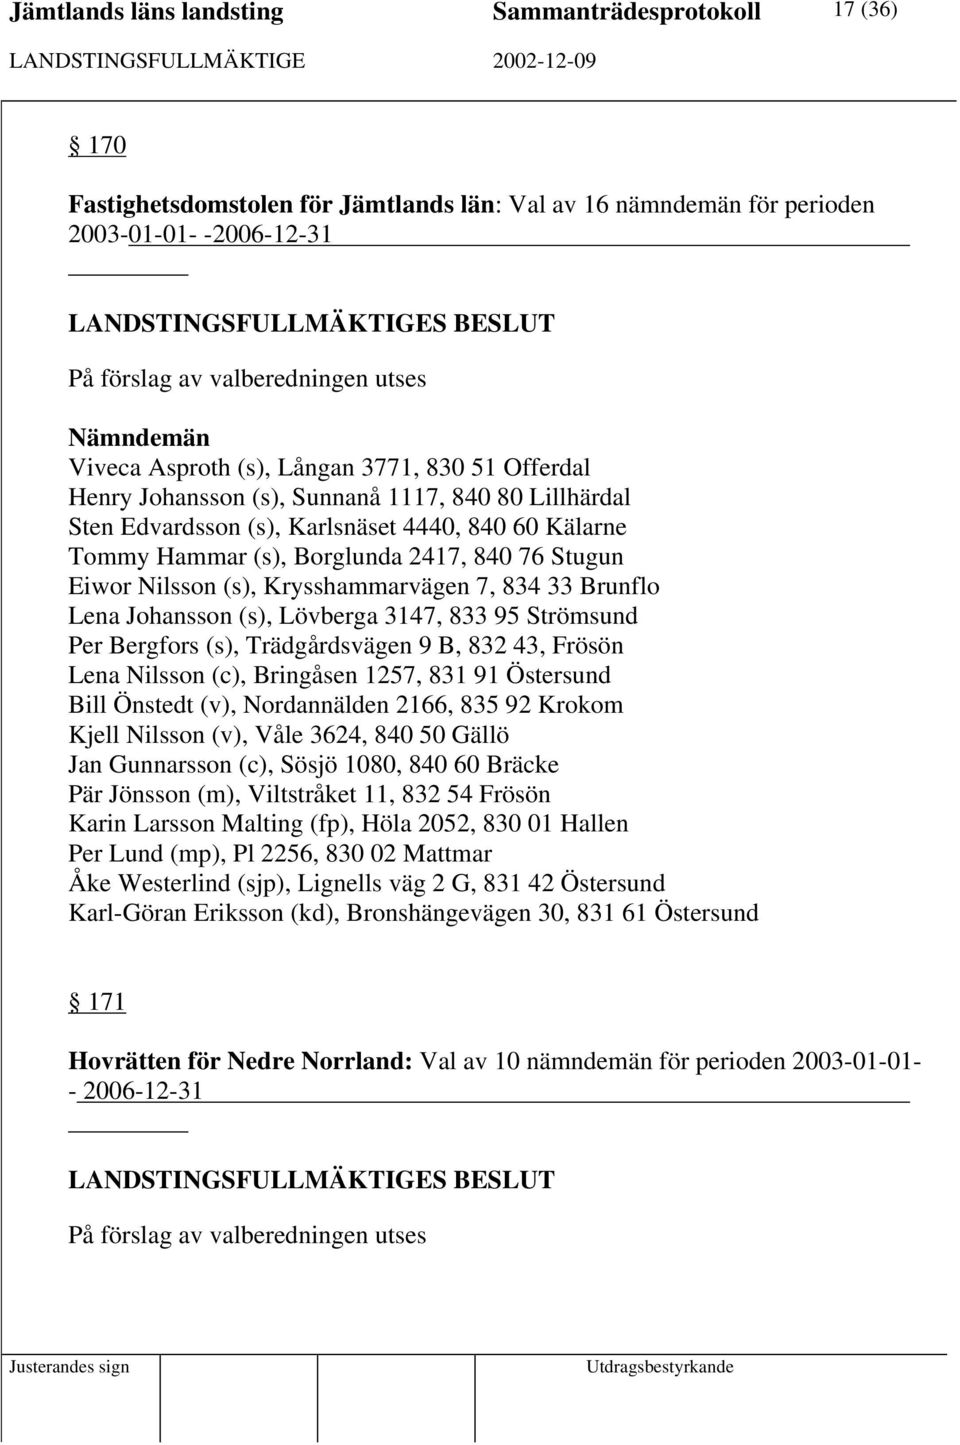 Krysshammarvägen 7, 834 33 Brunflo Lena Johansson (s), Lövberga 3147, 833 95 Strömsund Per Bergfors (s), Trädgårdsvägen 9 B, 832 43, Frösön Lena Nilsson (c), Bringåsen 1257, 831 91 Östersund Bill